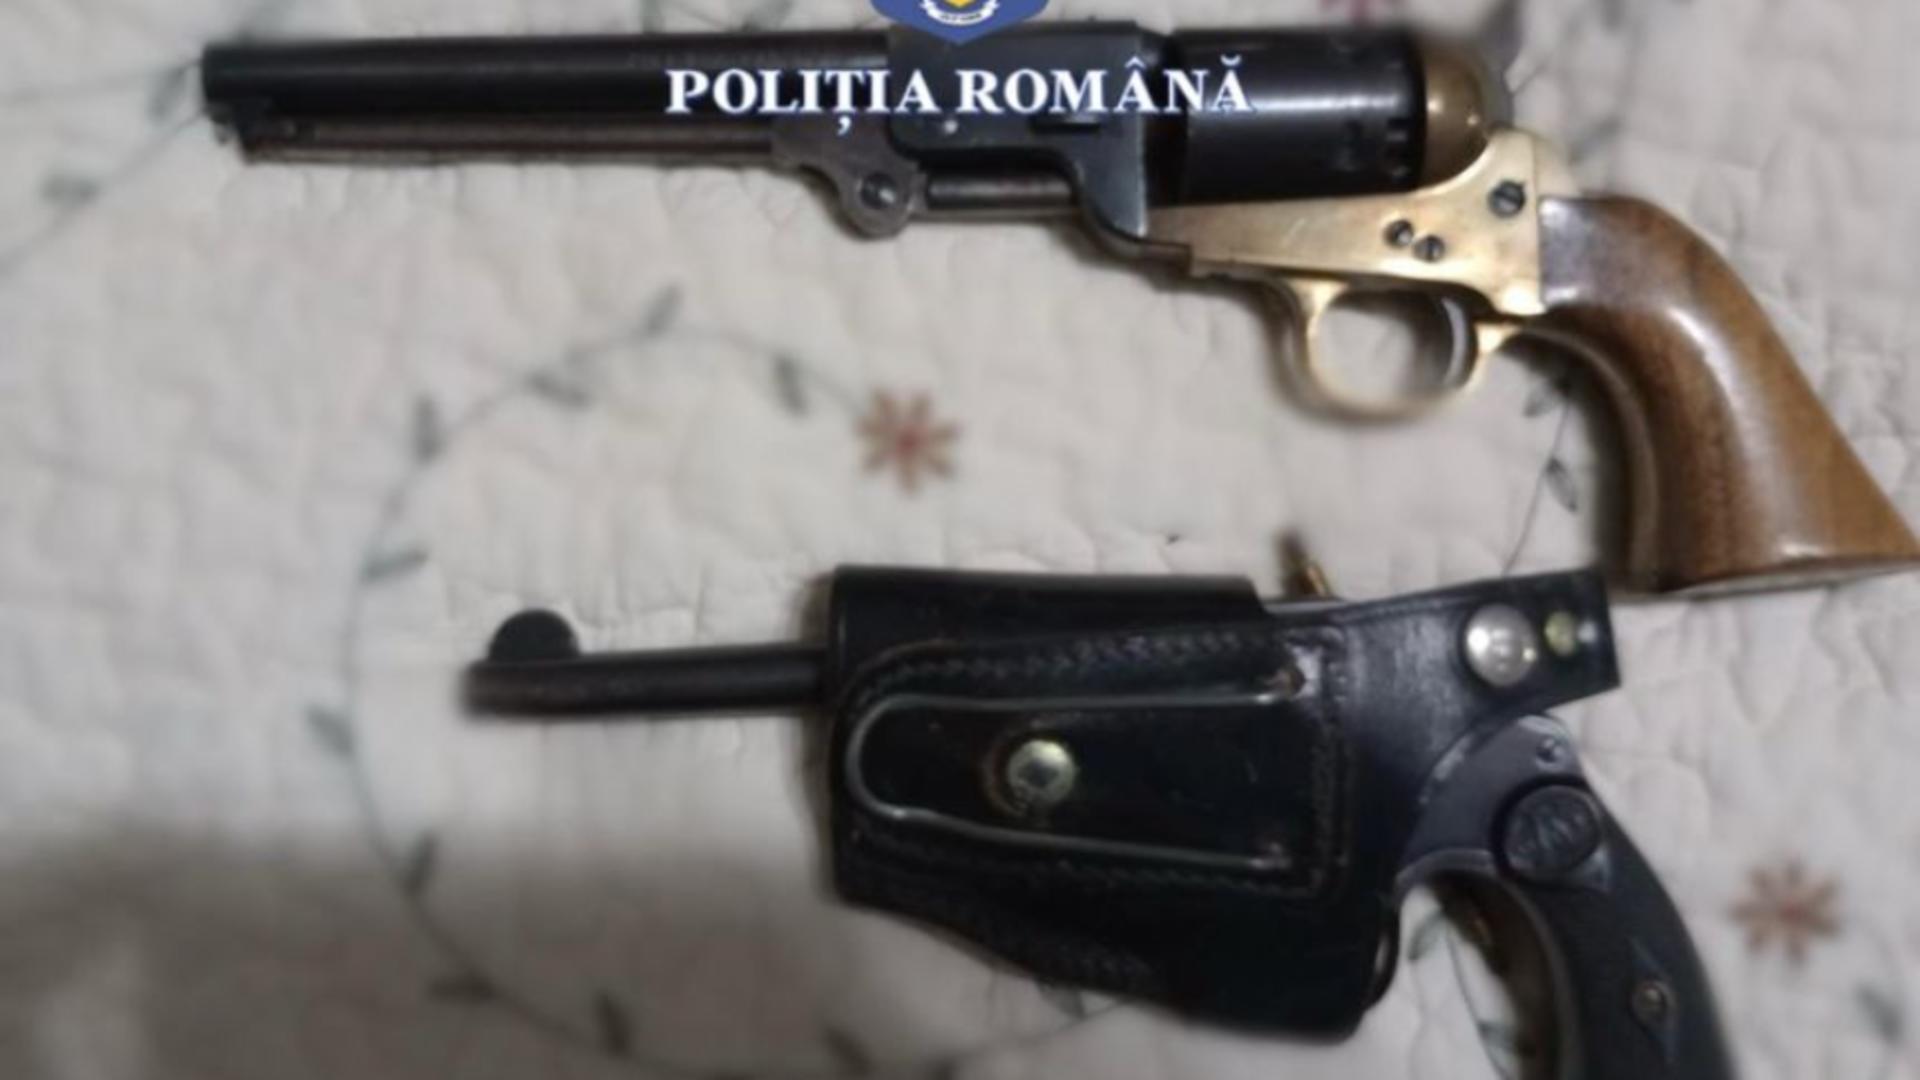 Bunicuța cămătarilor. Arme și muniții găsite în casa unei femei de 75 de ani din Timiș